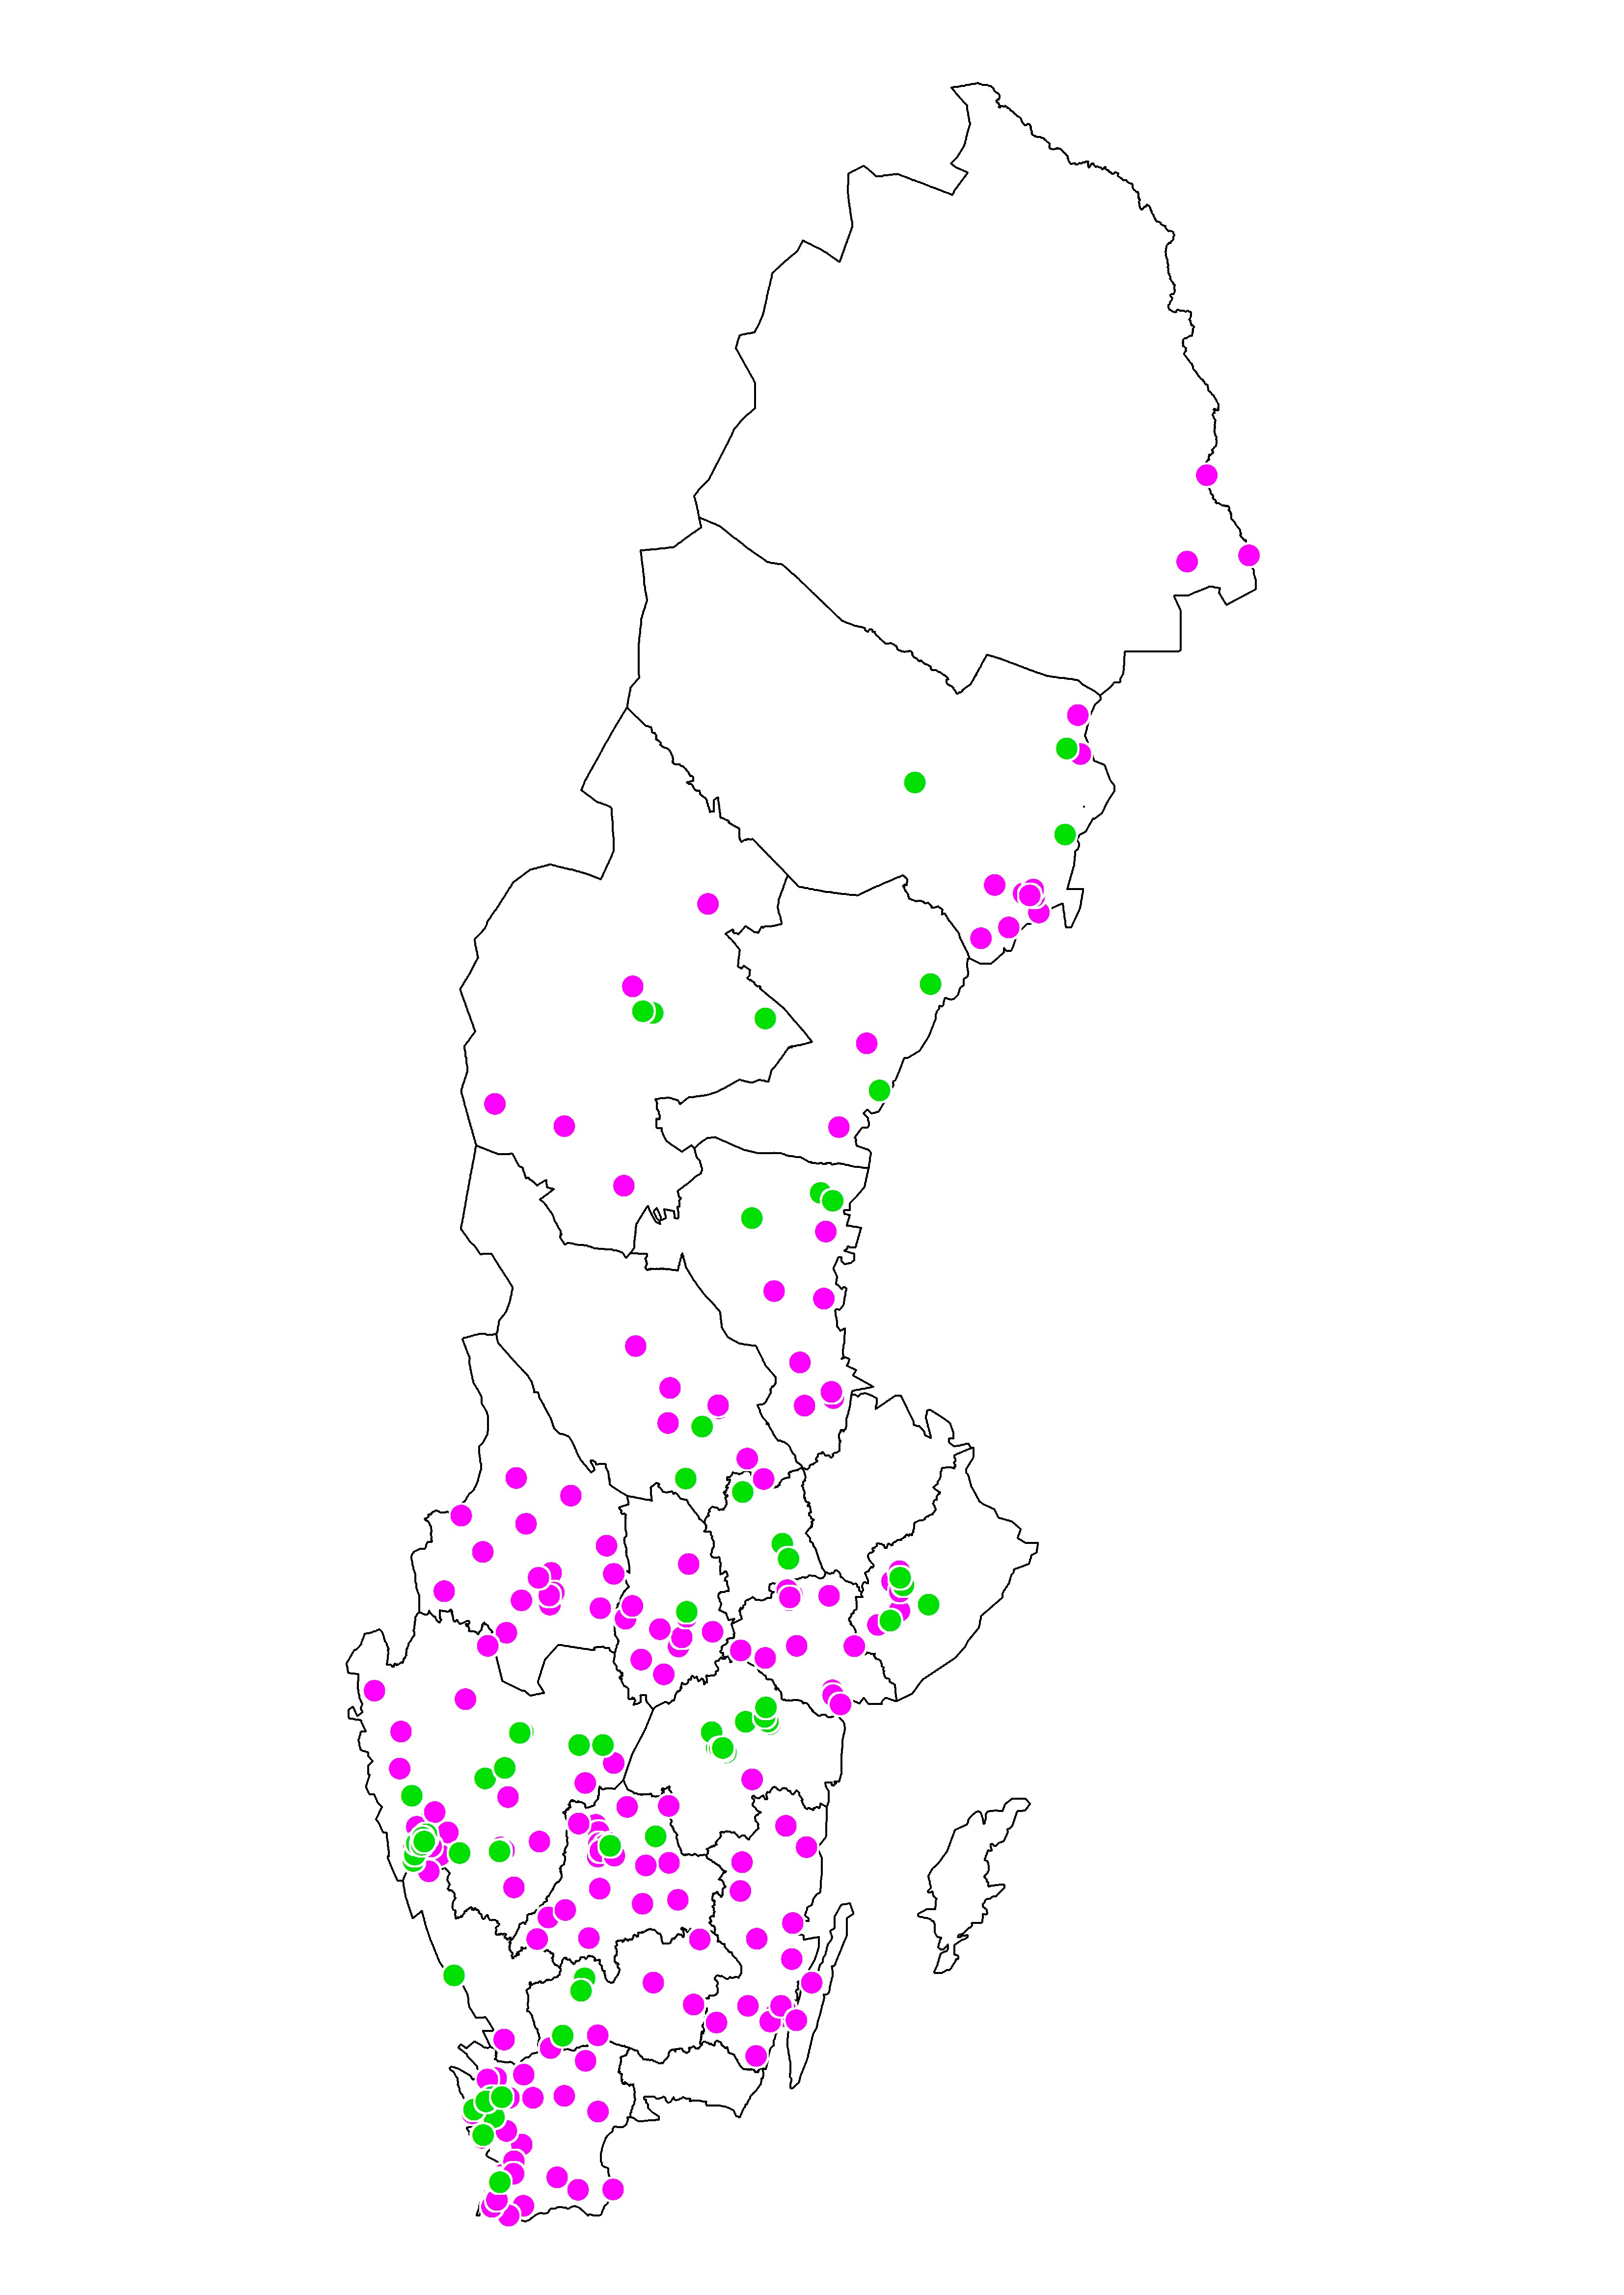 Verksamhetsformerna finns i alla regioner förutom tre; Region Blekinge, Region Gotland och Region Uppsala.